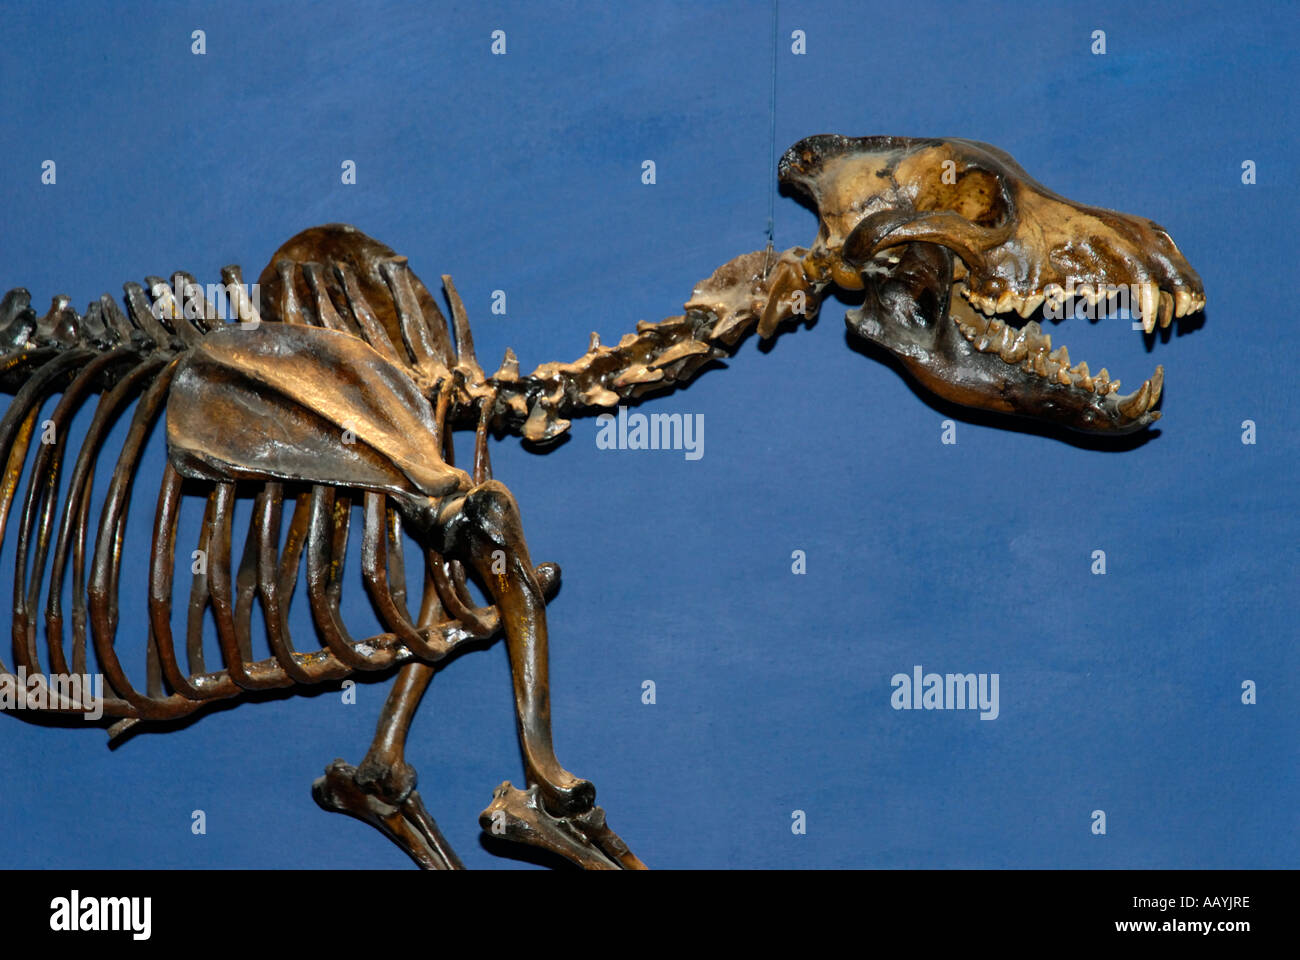 Conservé Le Loup, Canis dirus, squelette de La Brea Tar Pits, Page Museum, Los Angeles Banque D'Images